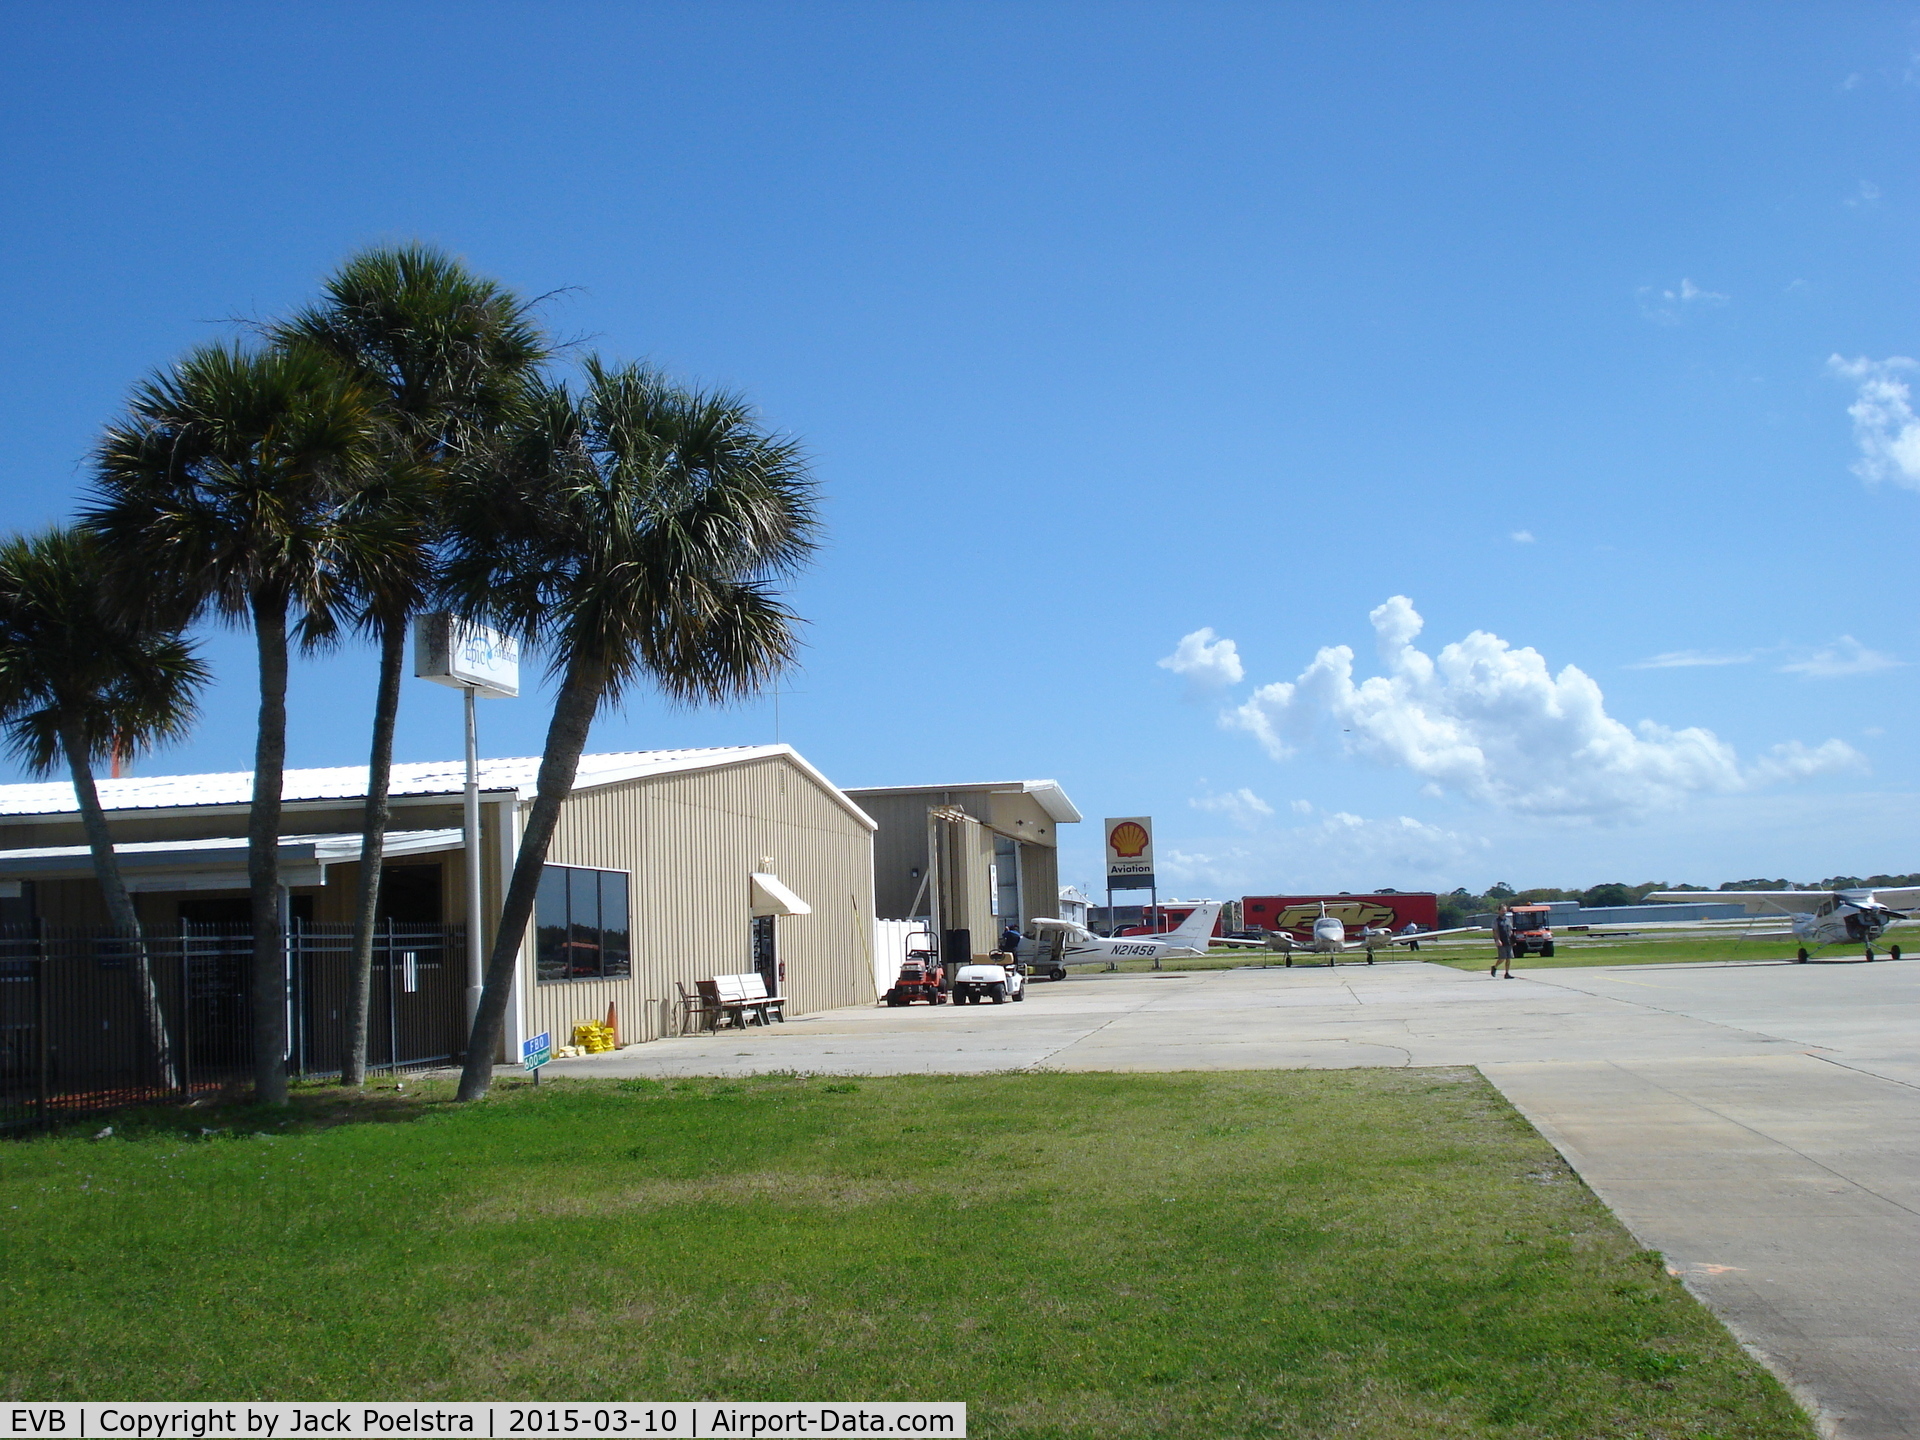 New Smyrna Beach Municipal Airport (EVB) - Ramp and hangars